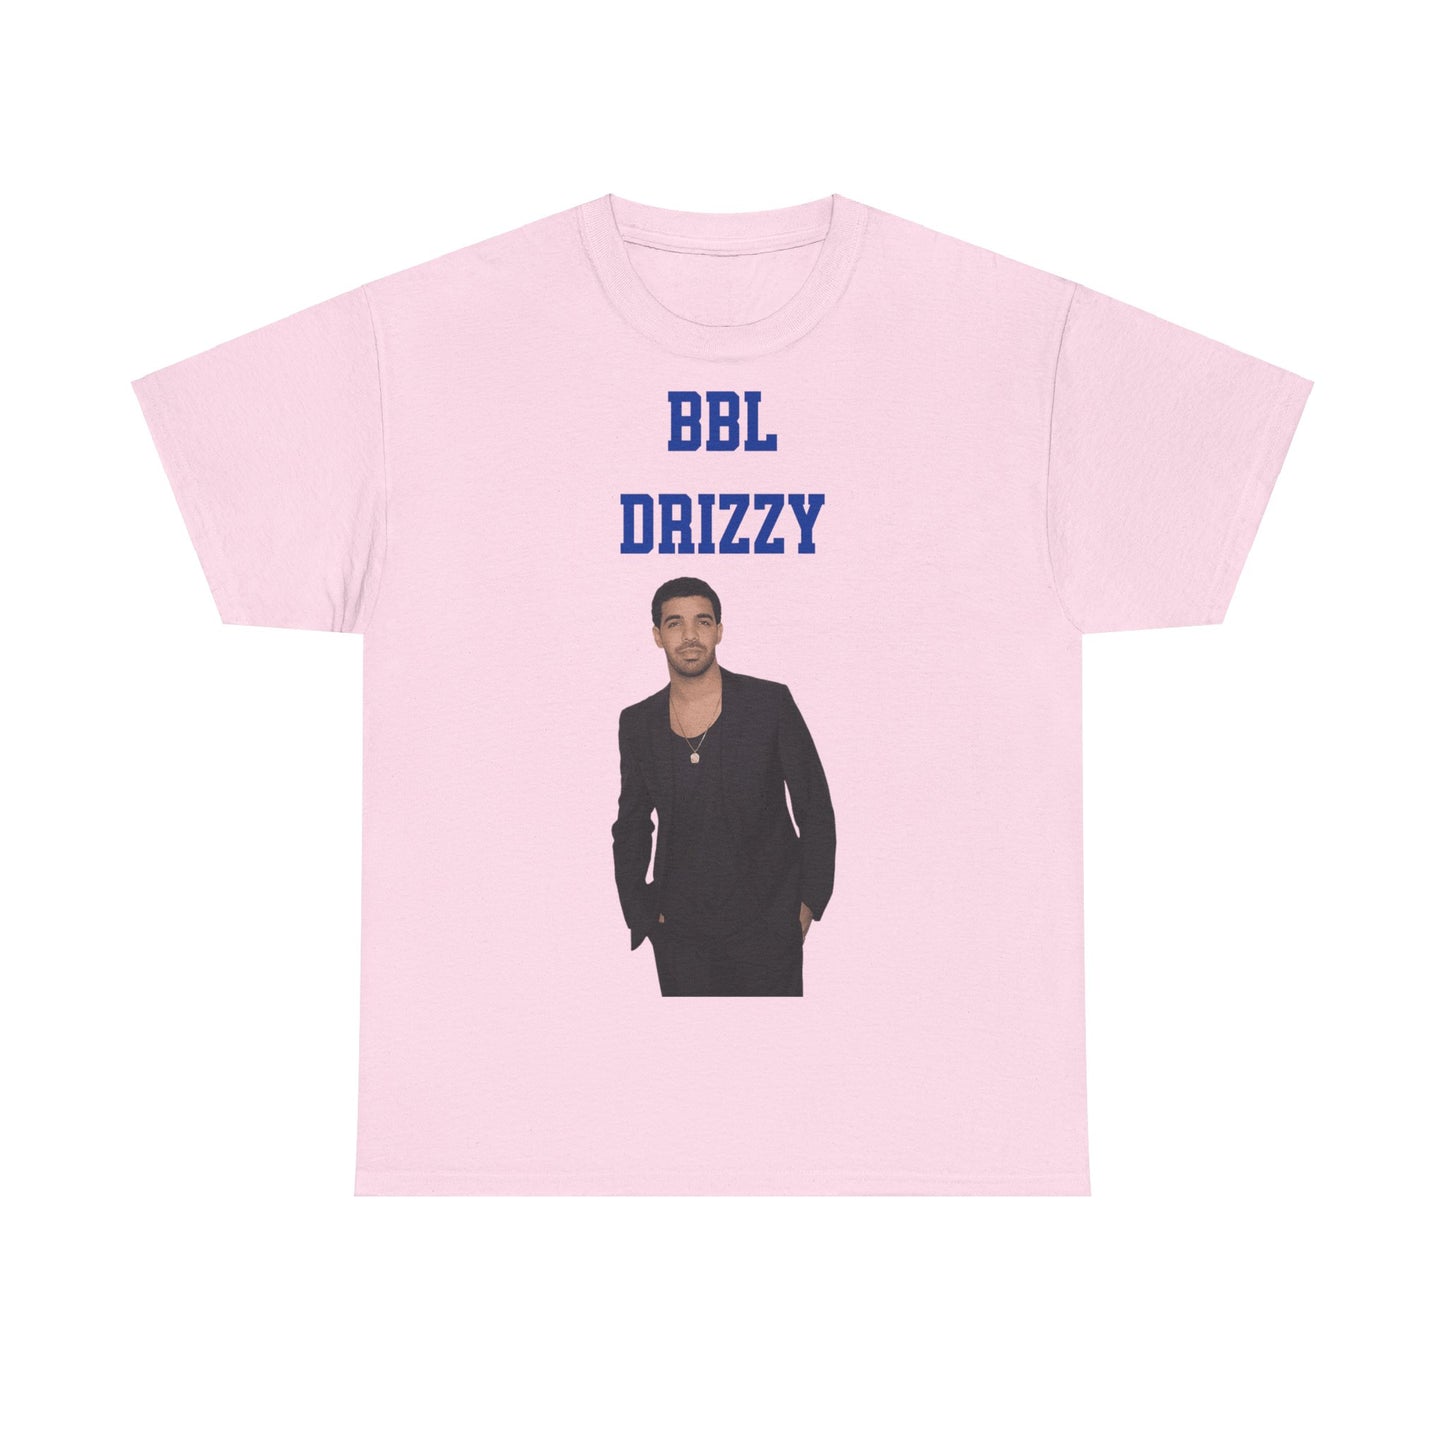 Drake BBL Drizzy Shirt zeigt Rapper Drake Porträt, Metro Boomin Beef Lyrics. Streetwear Merch, Hip-Hop Musik Merchandise.